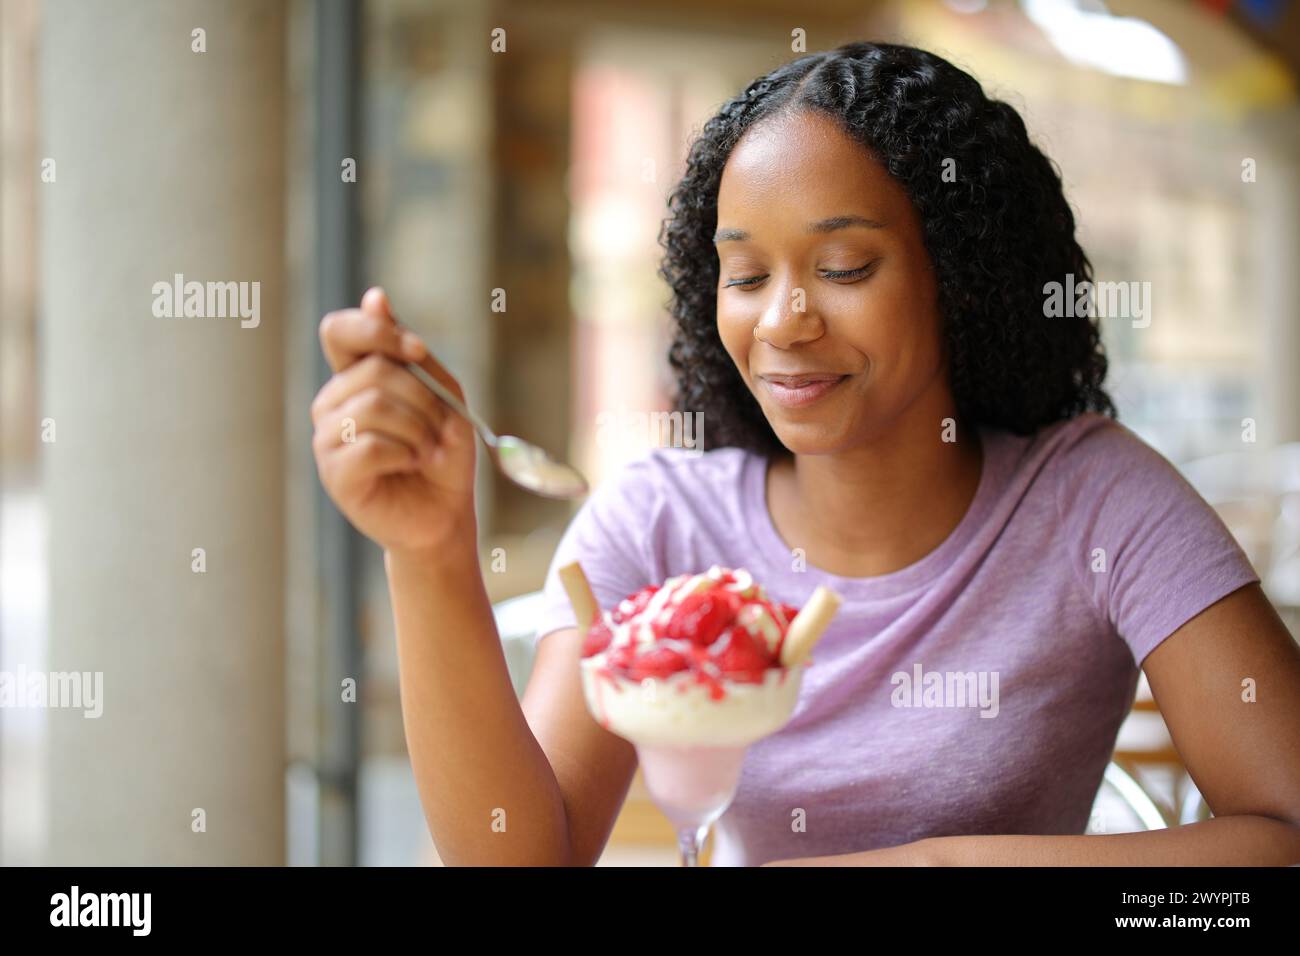 Femme noire mangeant des fraises dans une terrasse de restaurant Banque D'Images